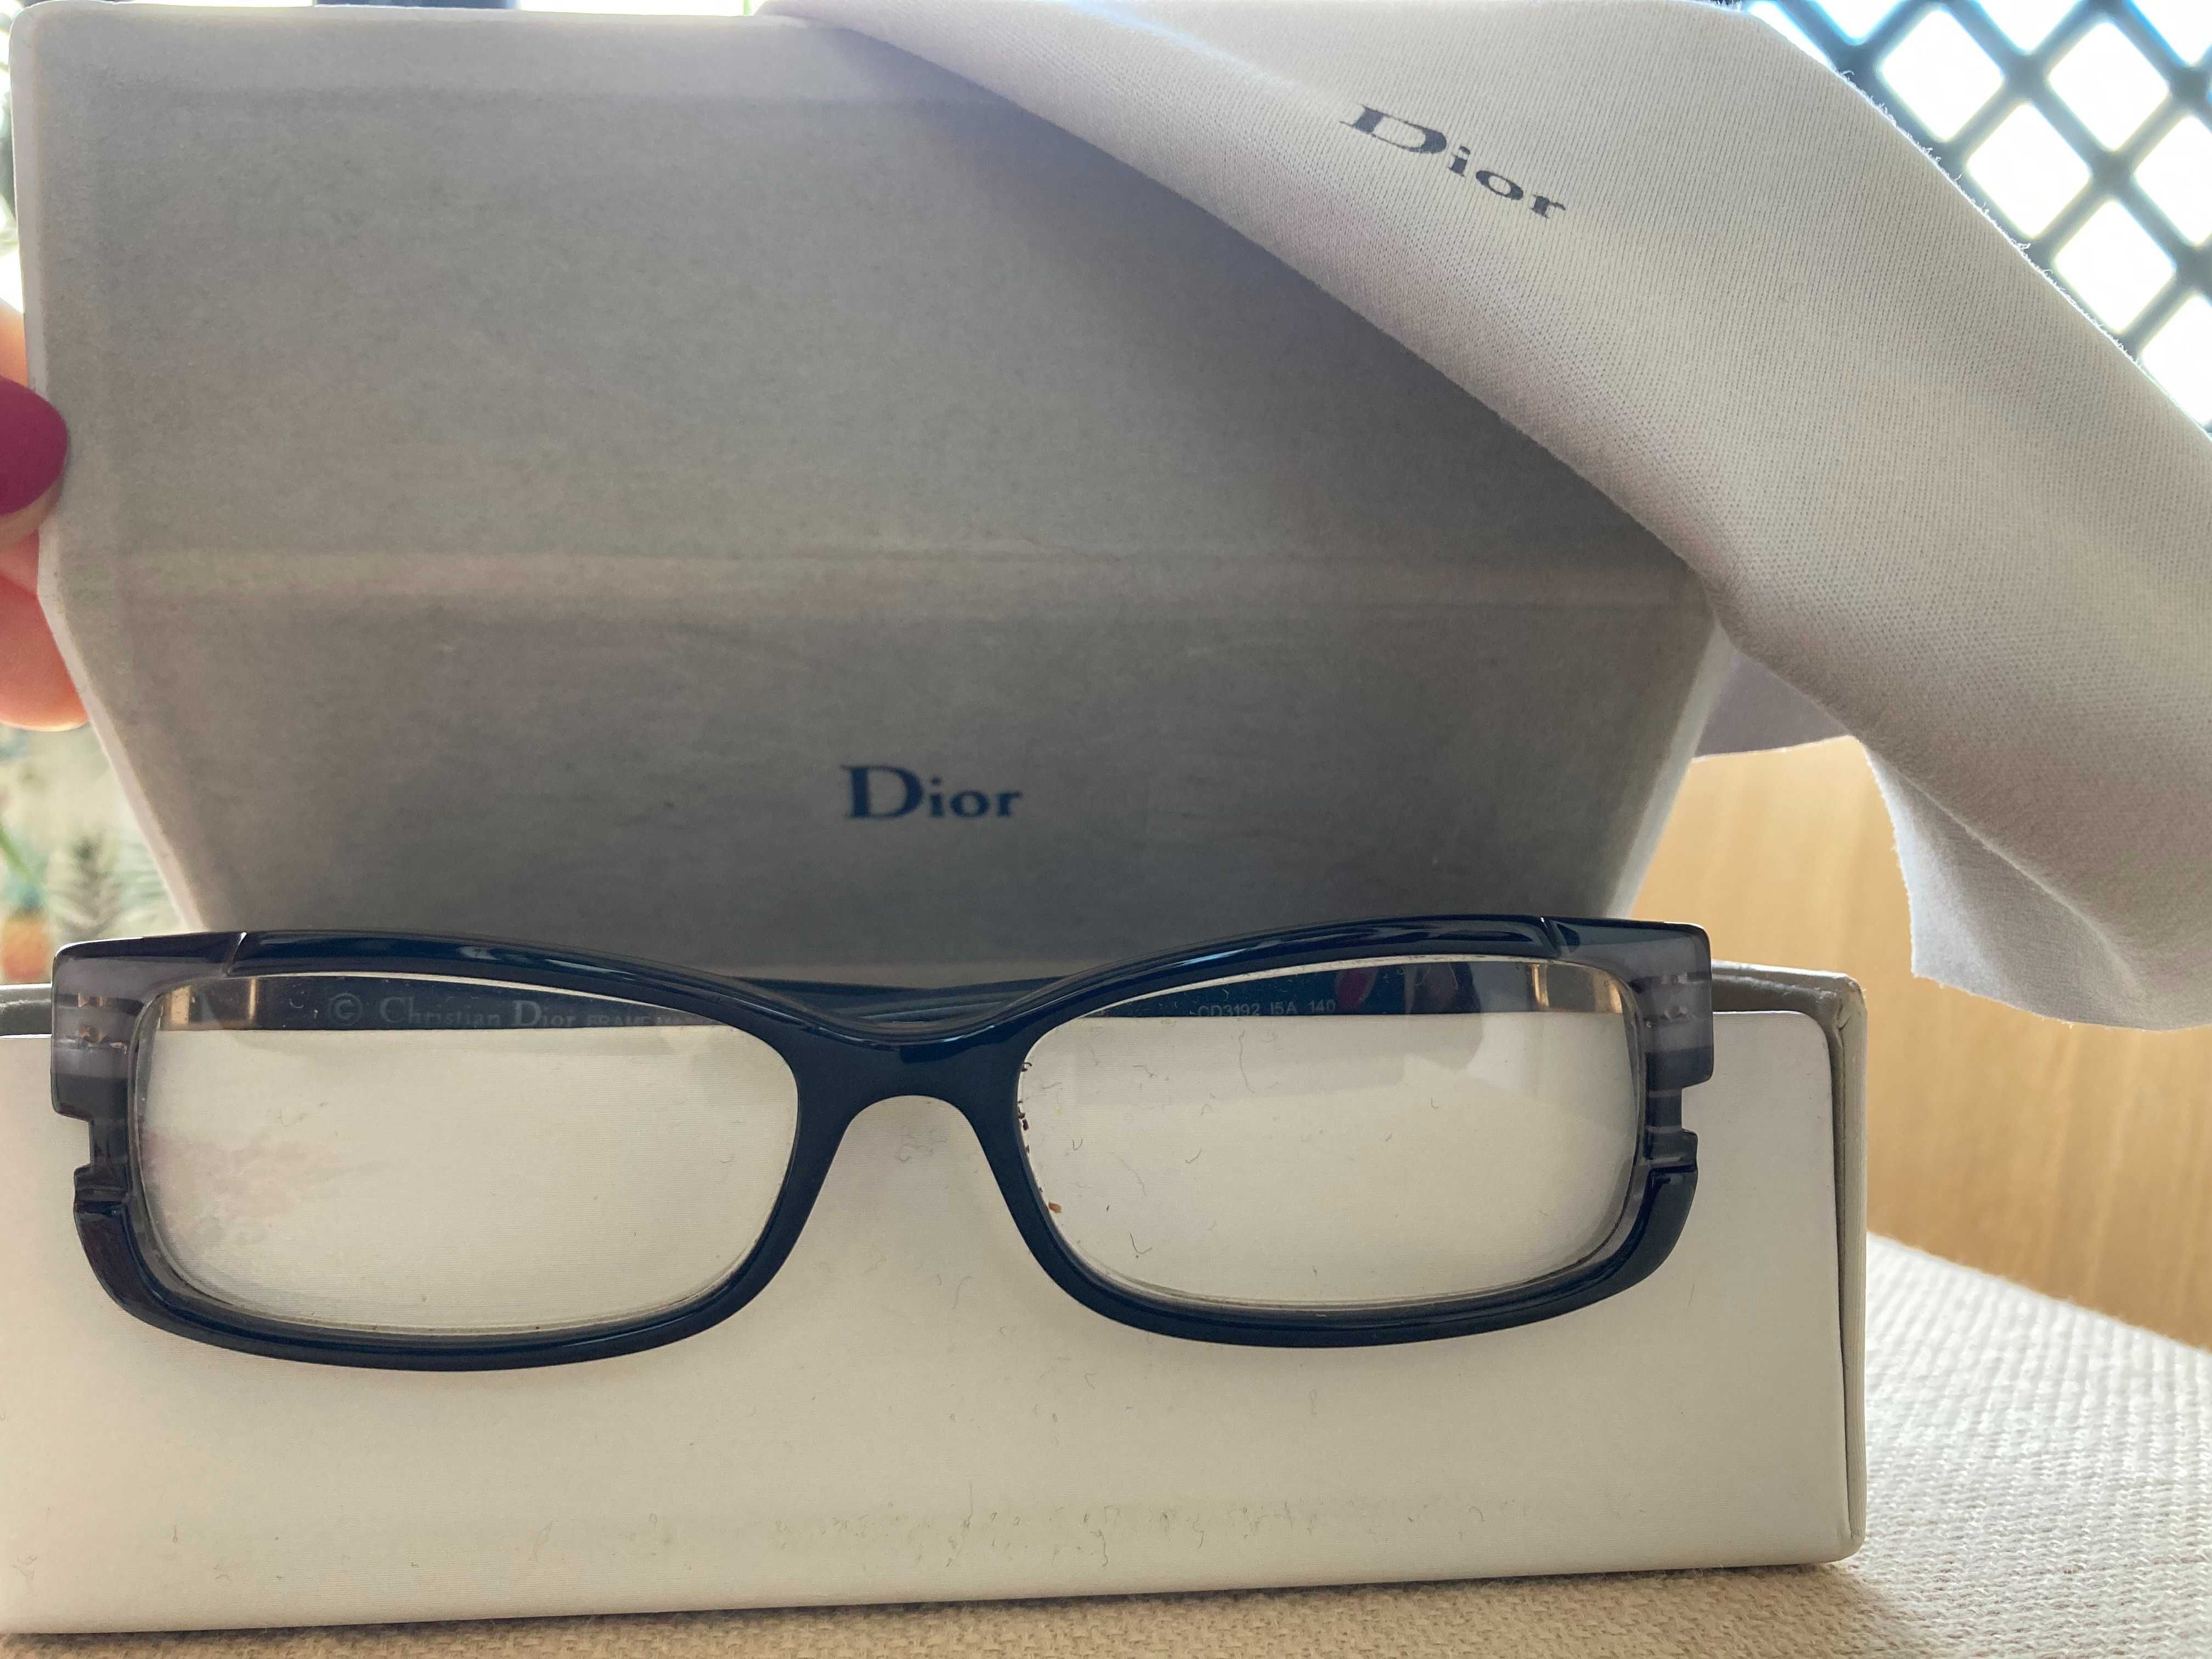 oculos dior, na caixa original